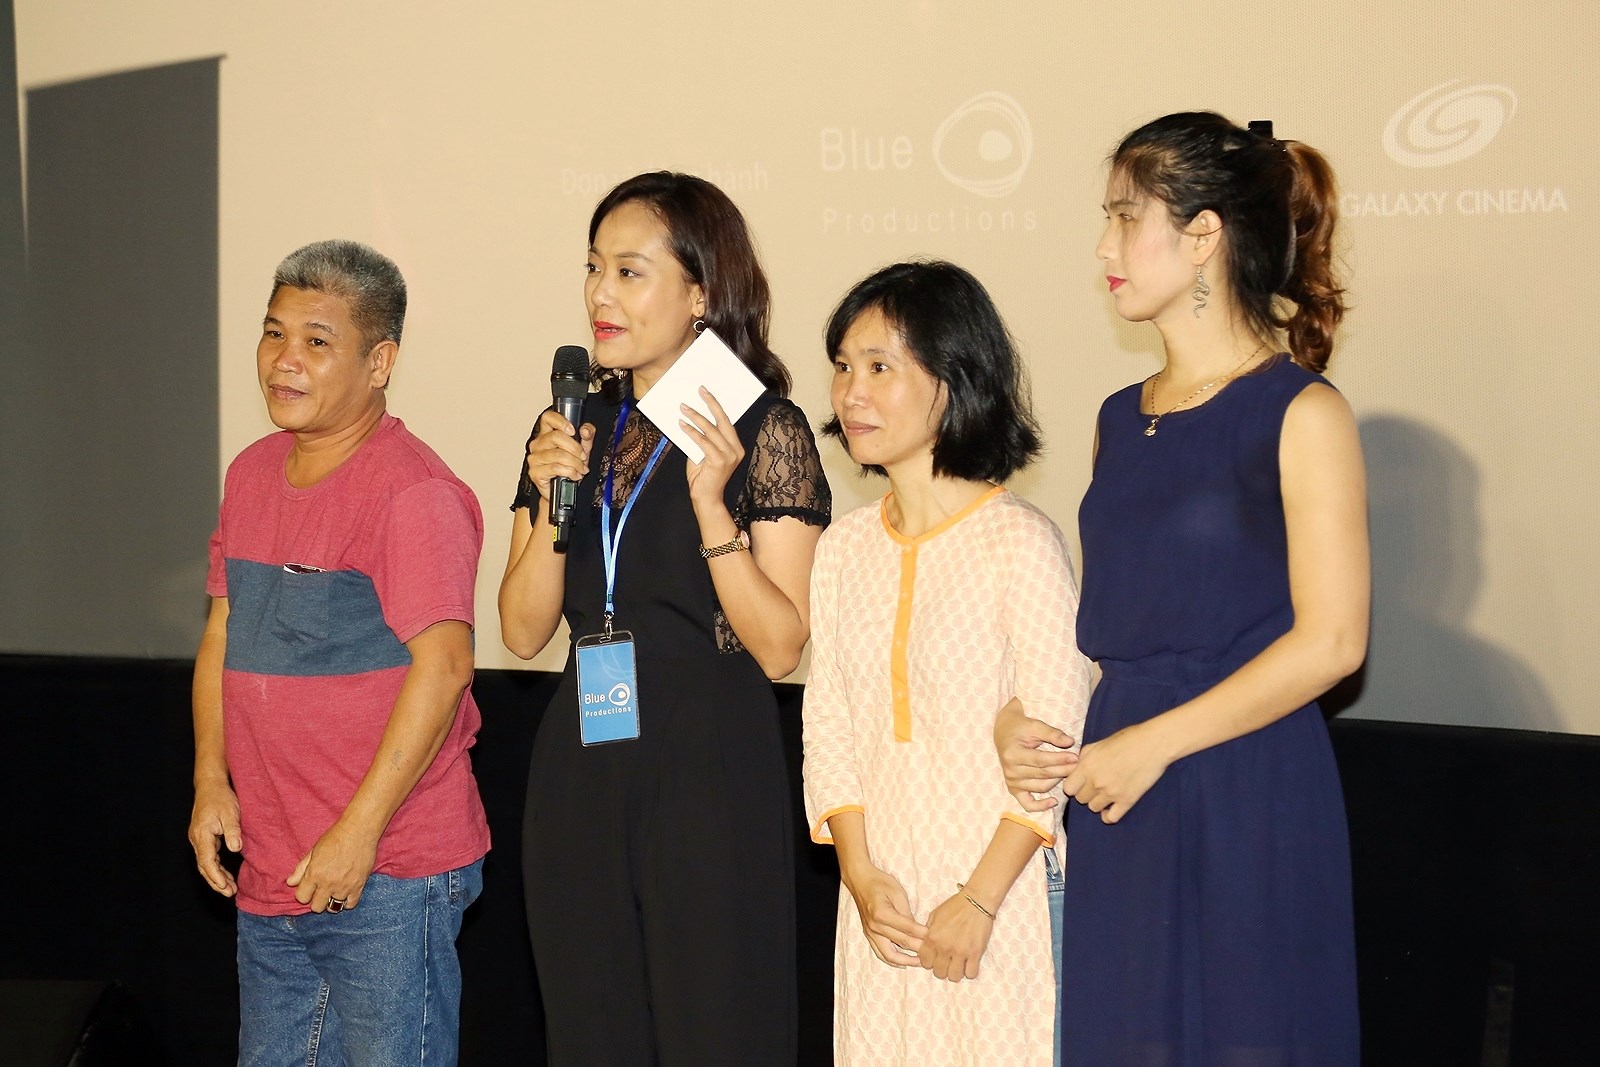 Ra mắt phim tài liệu Việt về người chuyển giới